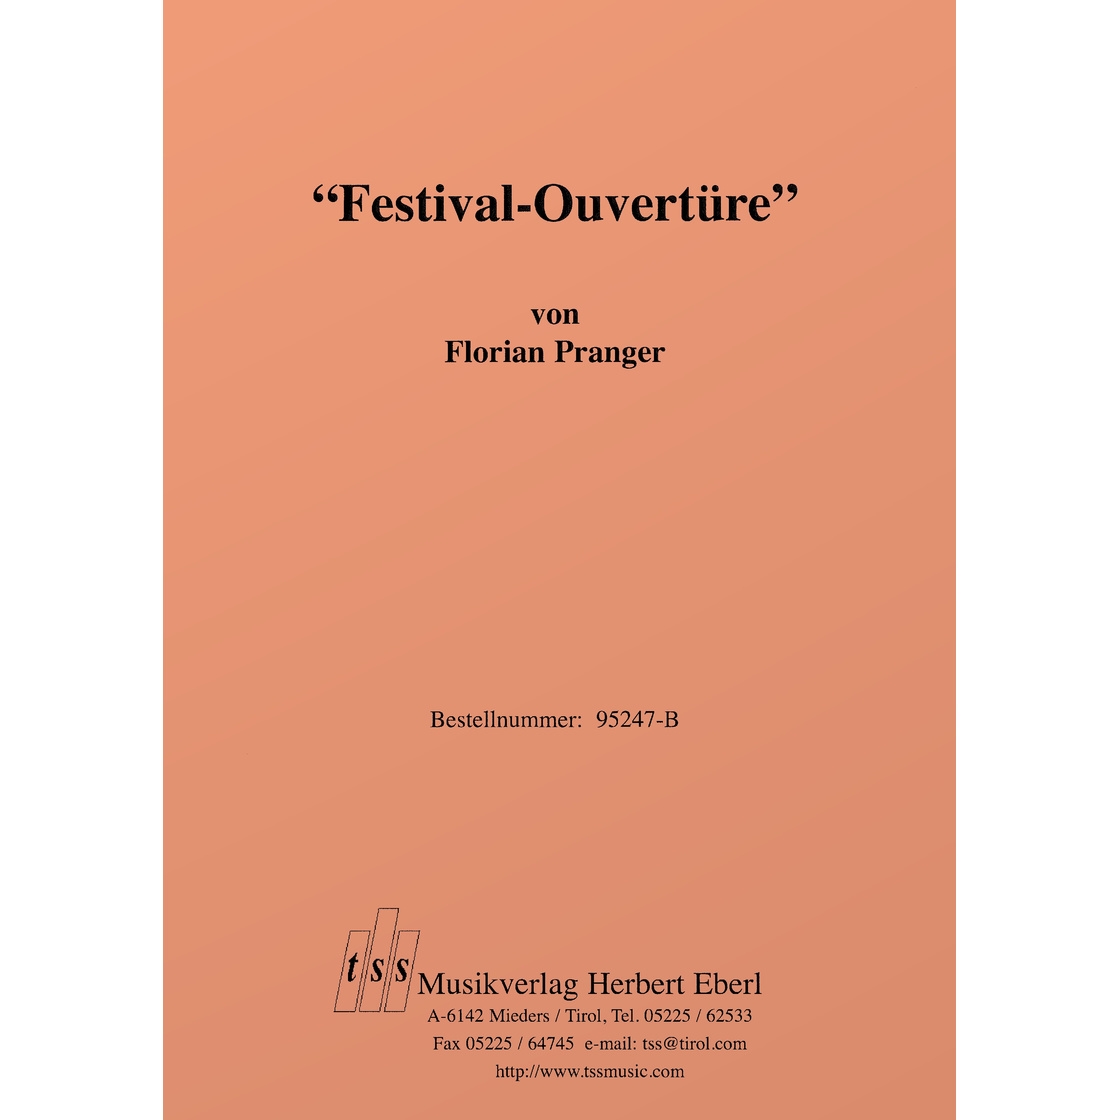 Festival-Ouvertre - klik hier